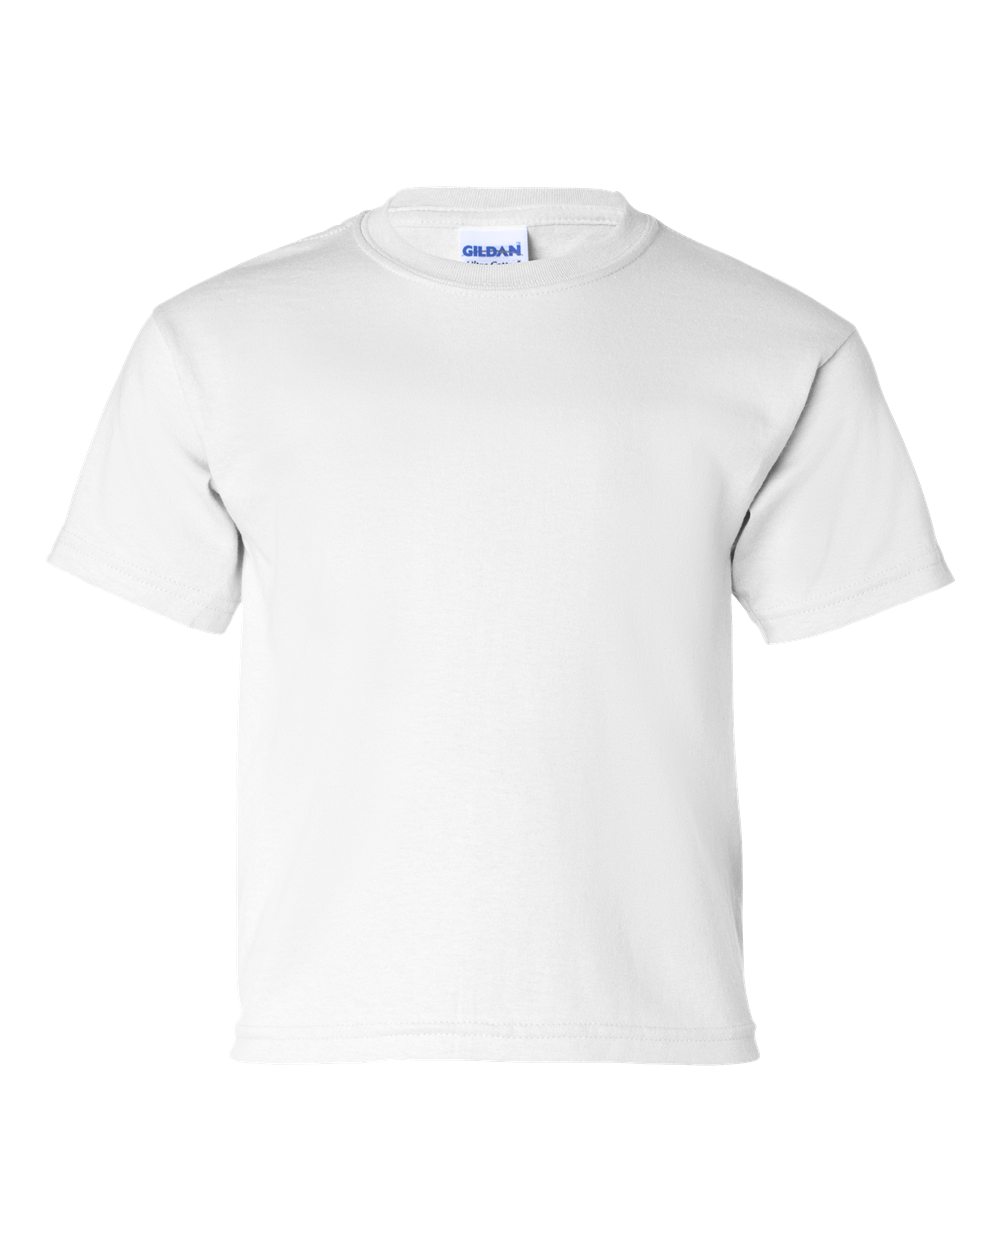 Gildan&#xAE; Ultra Cotton Youth T-Shirt